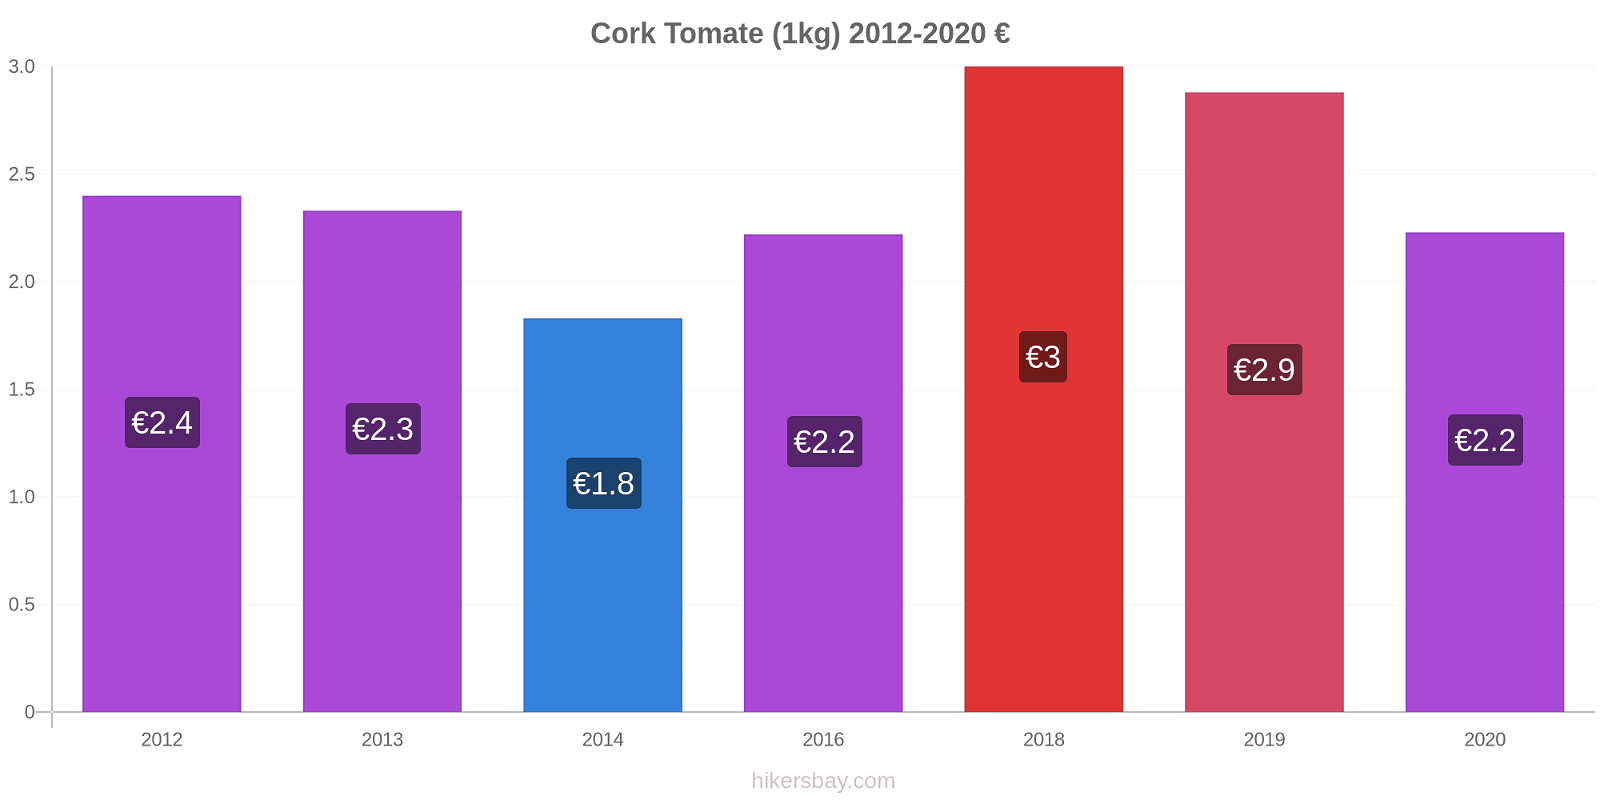 Cork cambios de precios Tomate (1kg) hikersbay.com